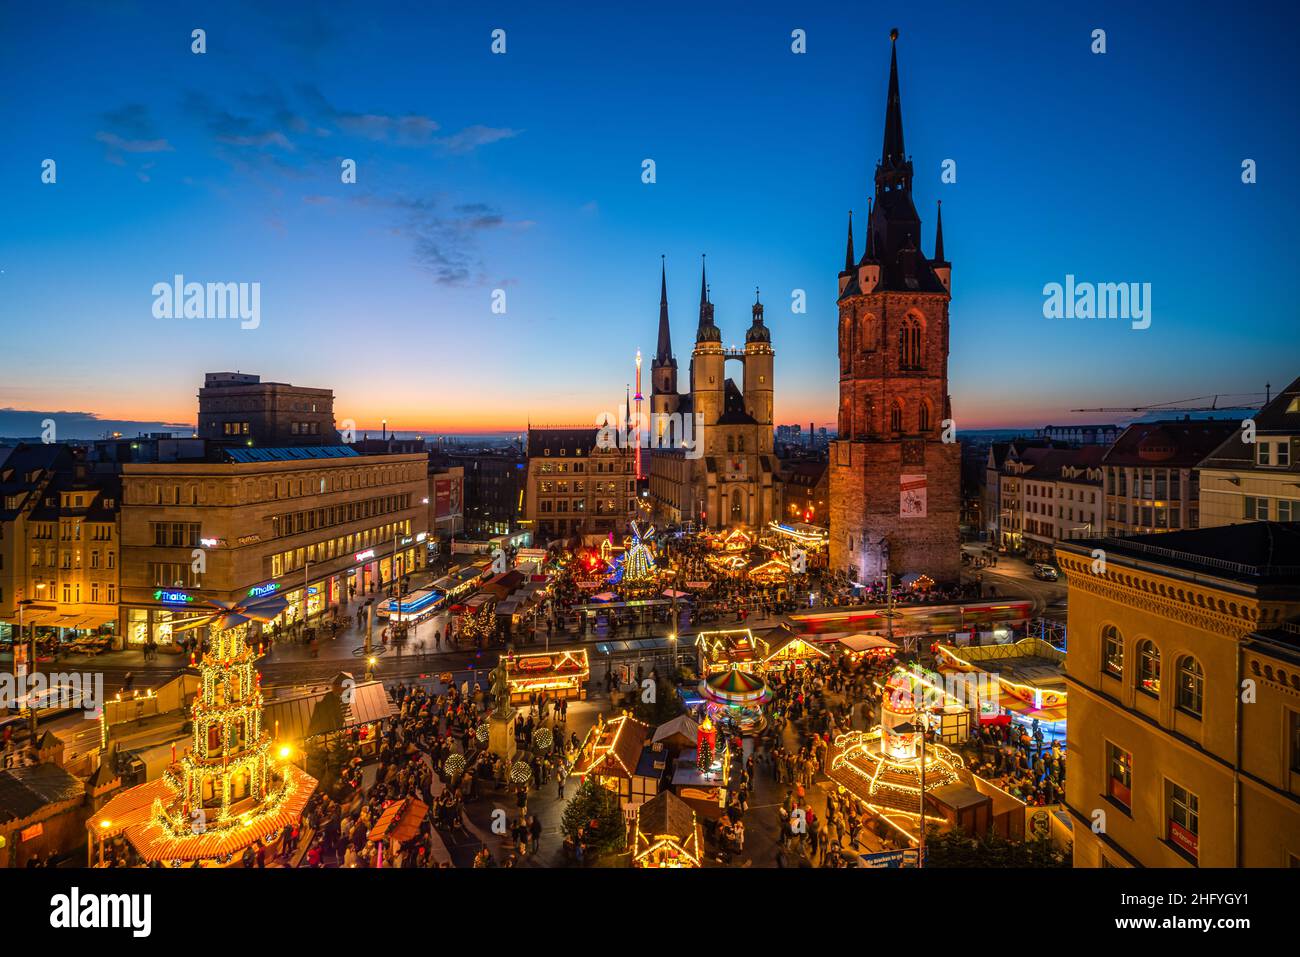 Weihnachtsmarkt in Halle an der Saale von oben mit historischer Stadtansicht, Roter Turm, Marktkirche und Sonnenuntergang Stock Photo